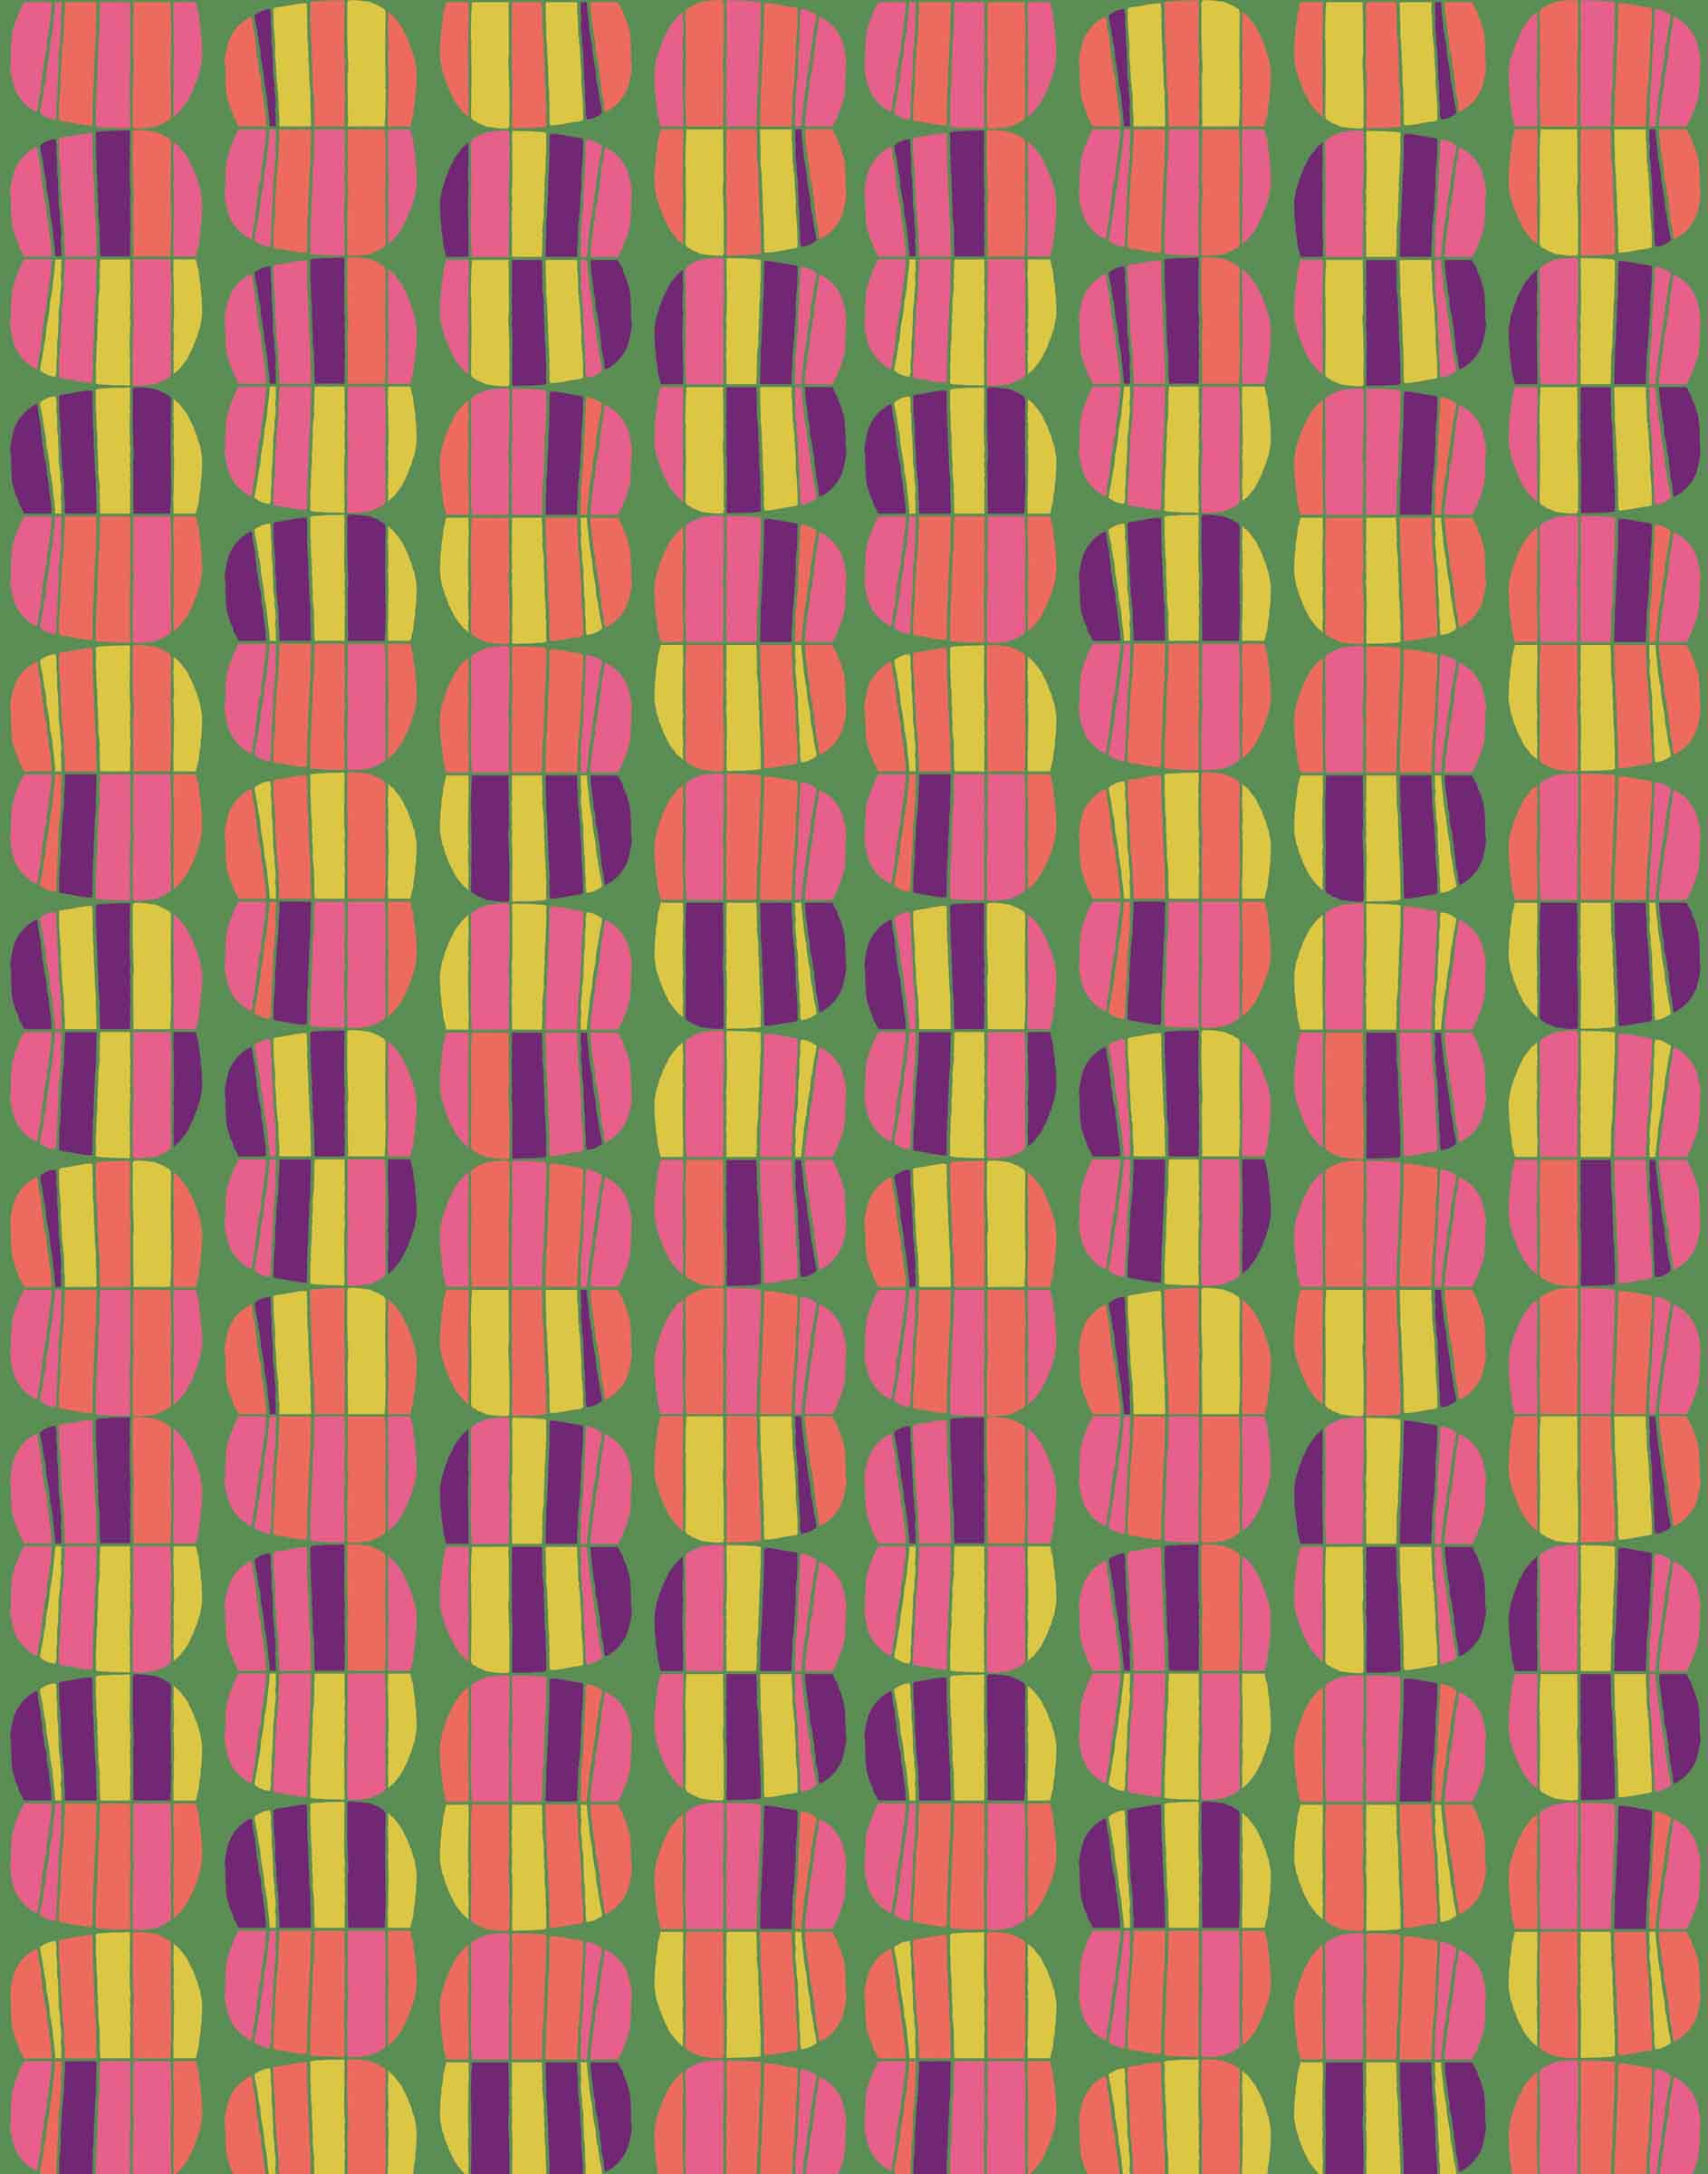 Lilypad pattern